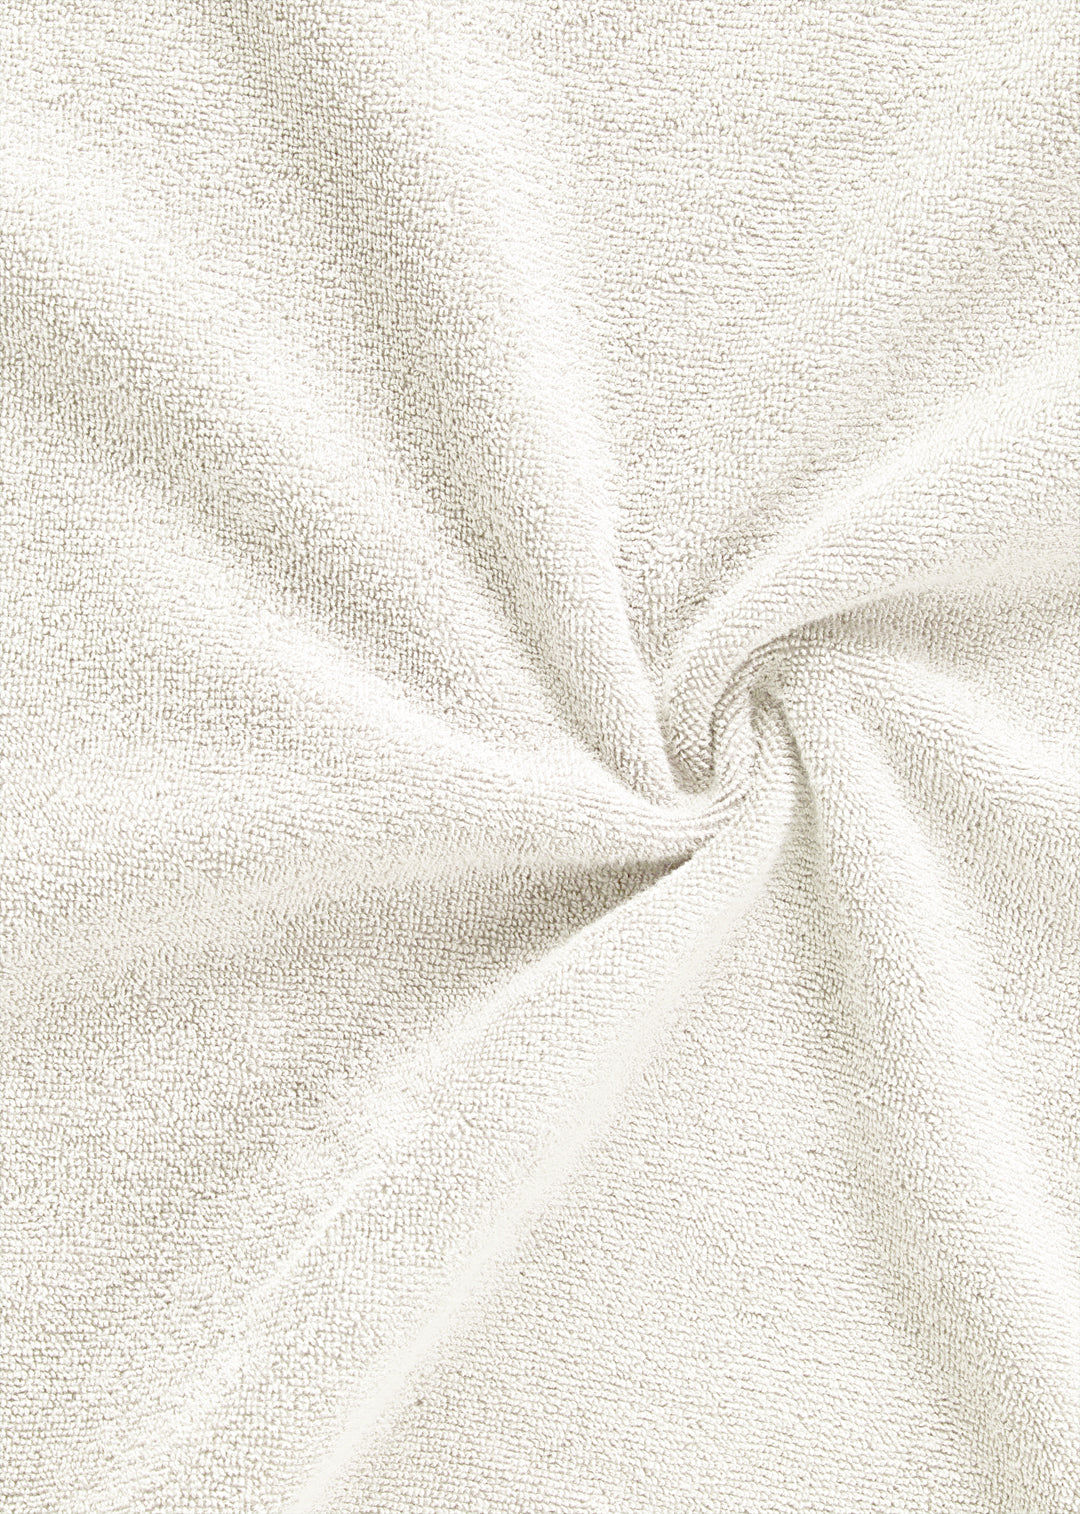 Handtuch Baumwolle Weiß 70 x 130 cm